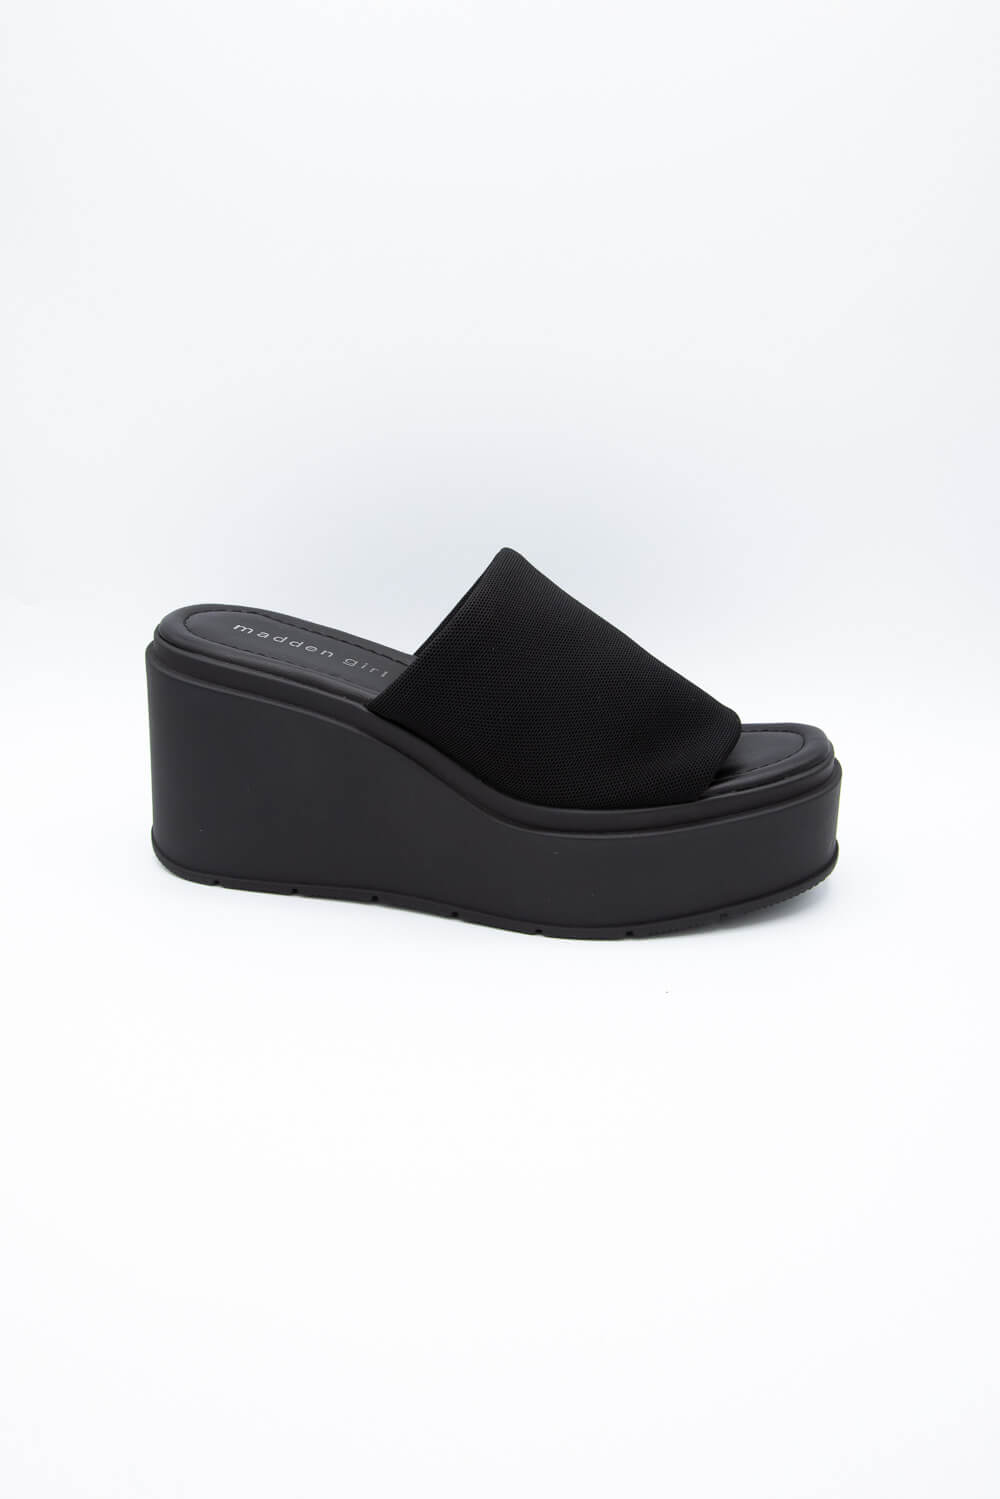 Buy HEIGHTEN Sandal for Women, Sandal Chappals for women footwear